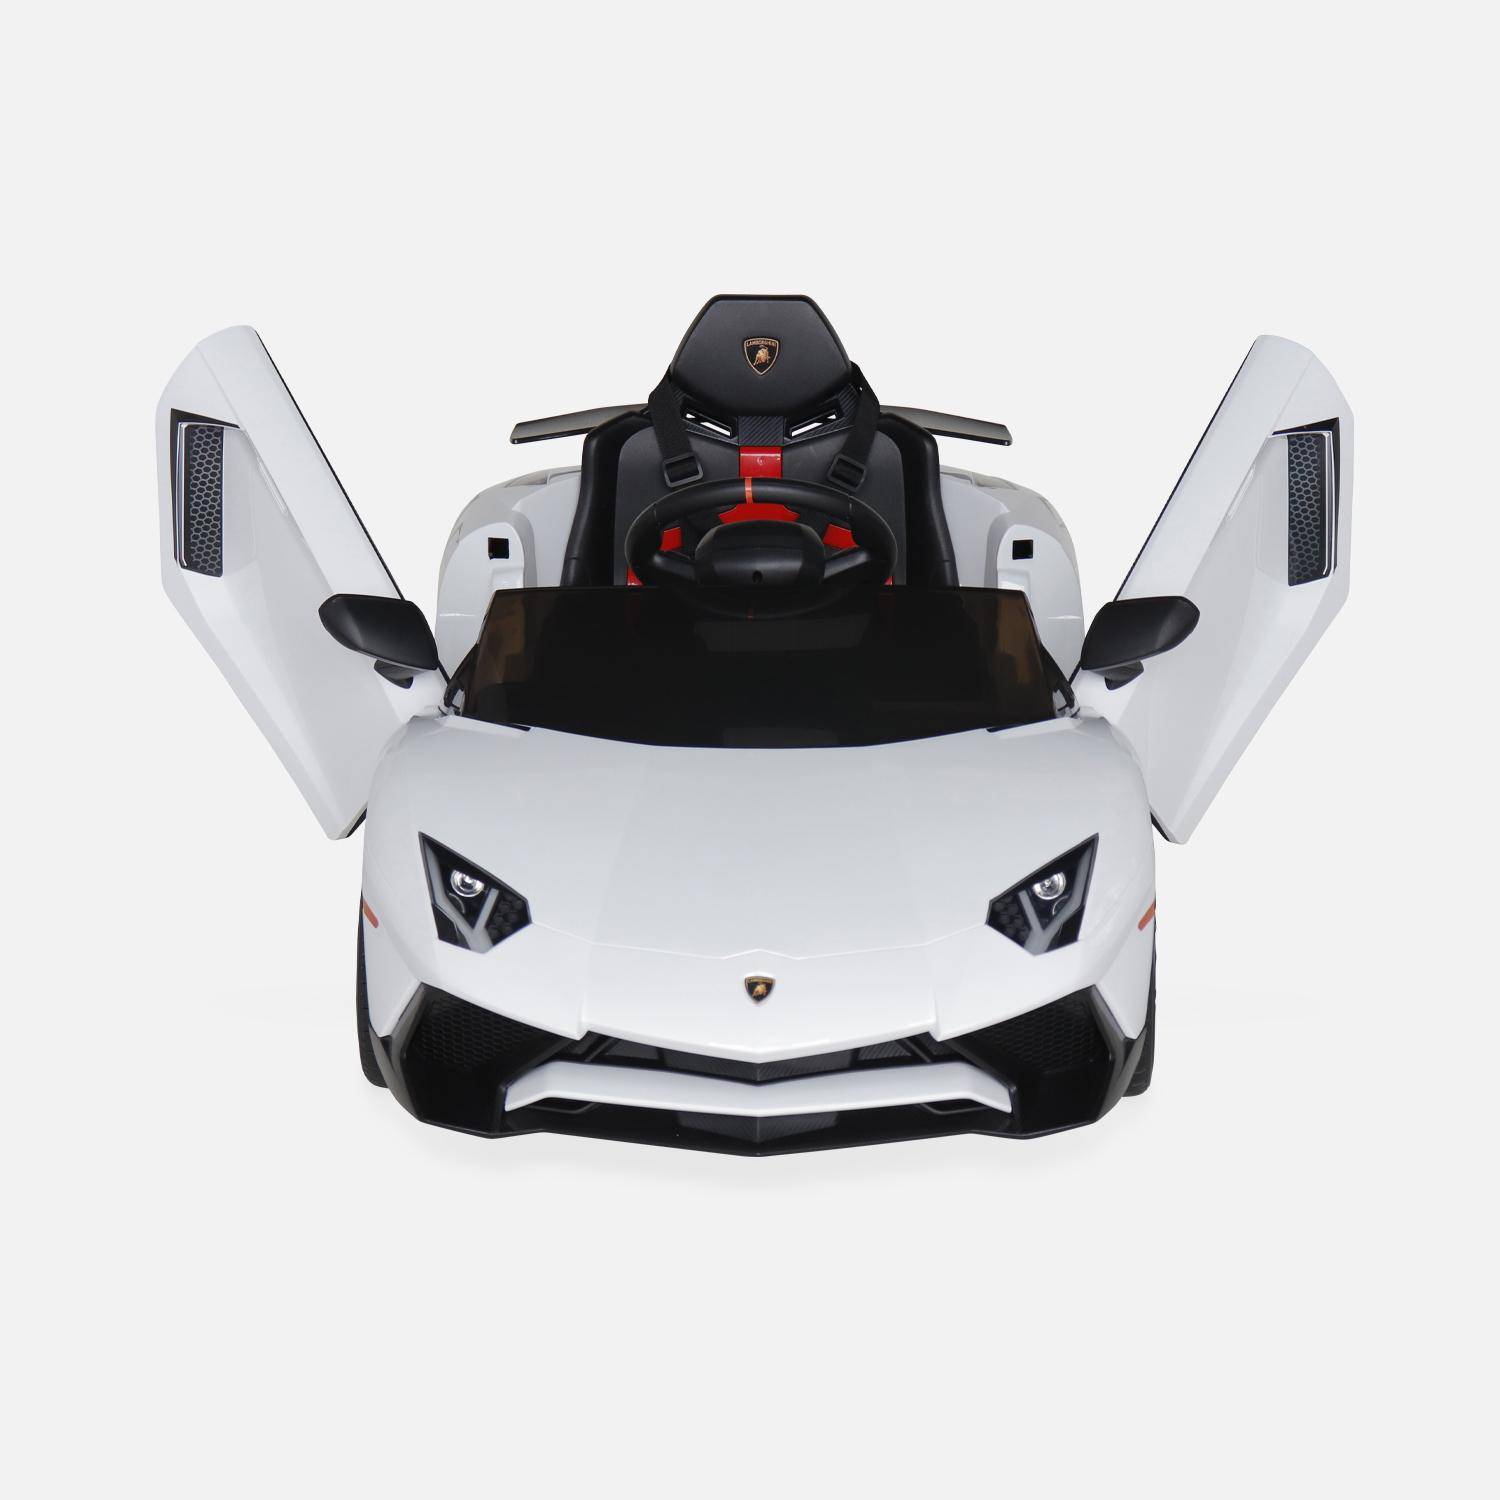 12V Lamborghini elektrische kinderauto, wit, 1 zitplaats, met radio, afstandsbediening, MP3, USB-poort en functionele koplampen,sweeek,Photo6